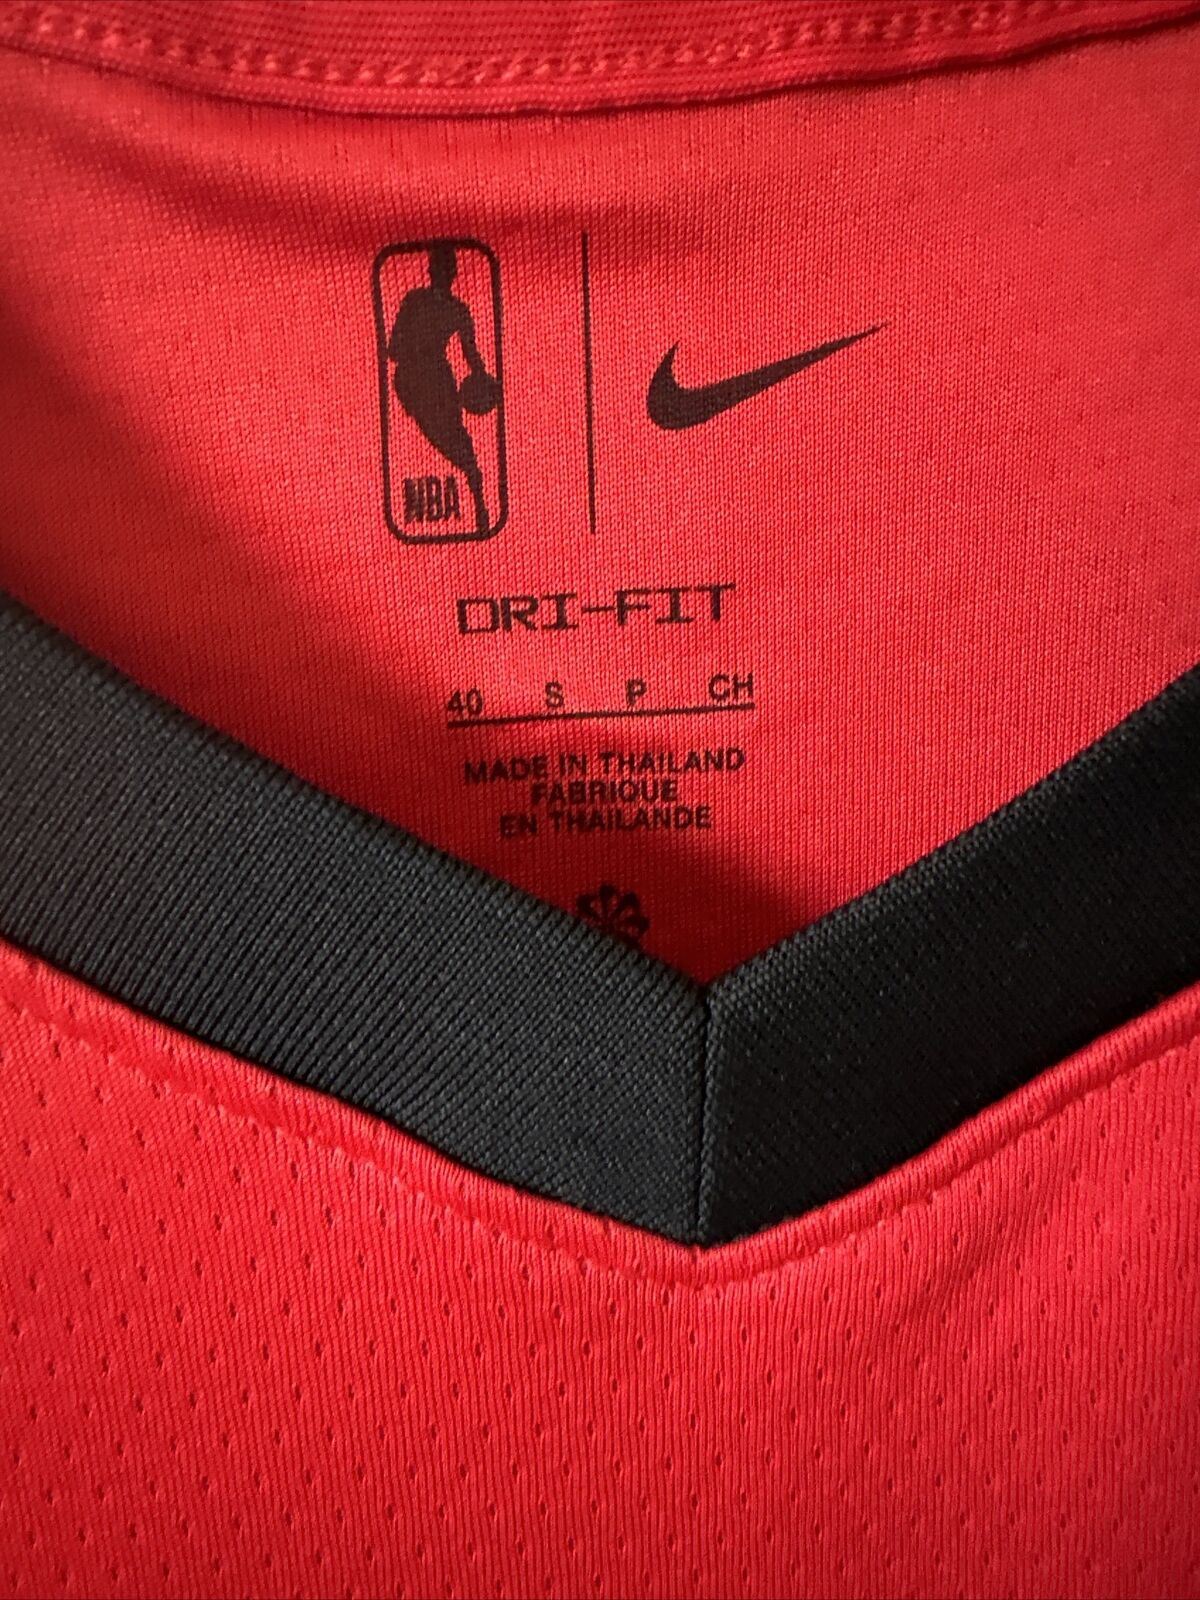 Nike NBA Houston Rockets Swingman Edition Jersey GREEN Men’s Small